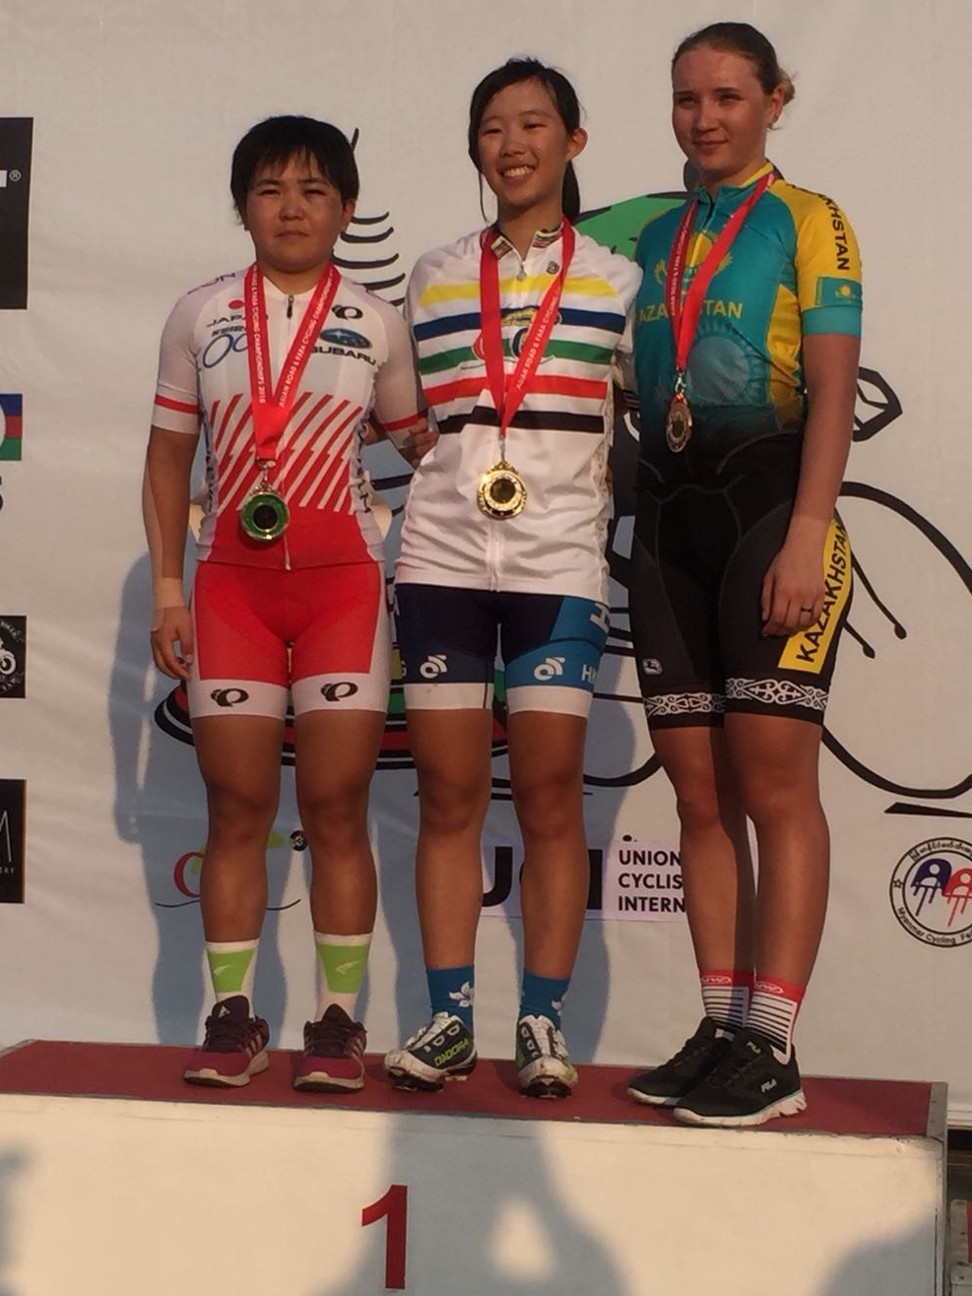 Hong Kong's Vivien Chiu stands on top of the podium after winning the women’s junior race in Myanmar.